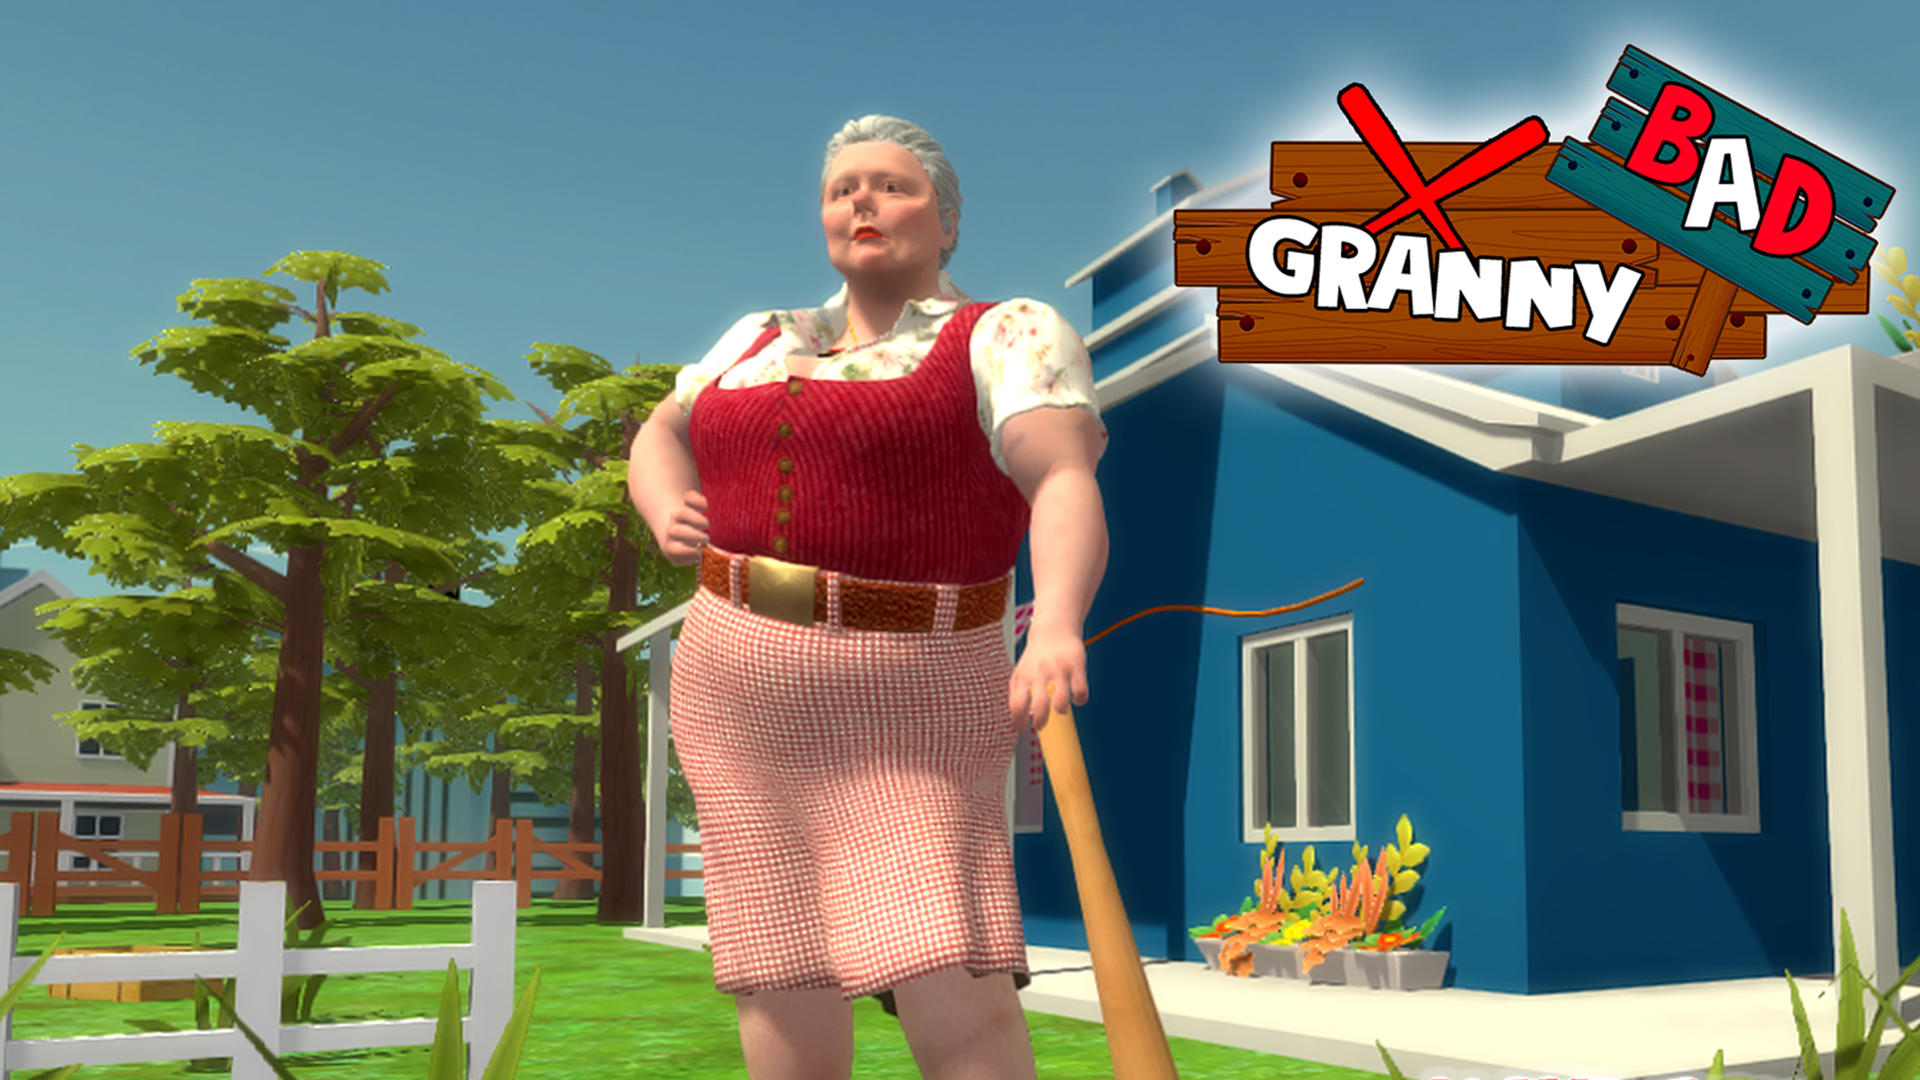 Bad Granny 4 | Secret Neighborのキャプチャ